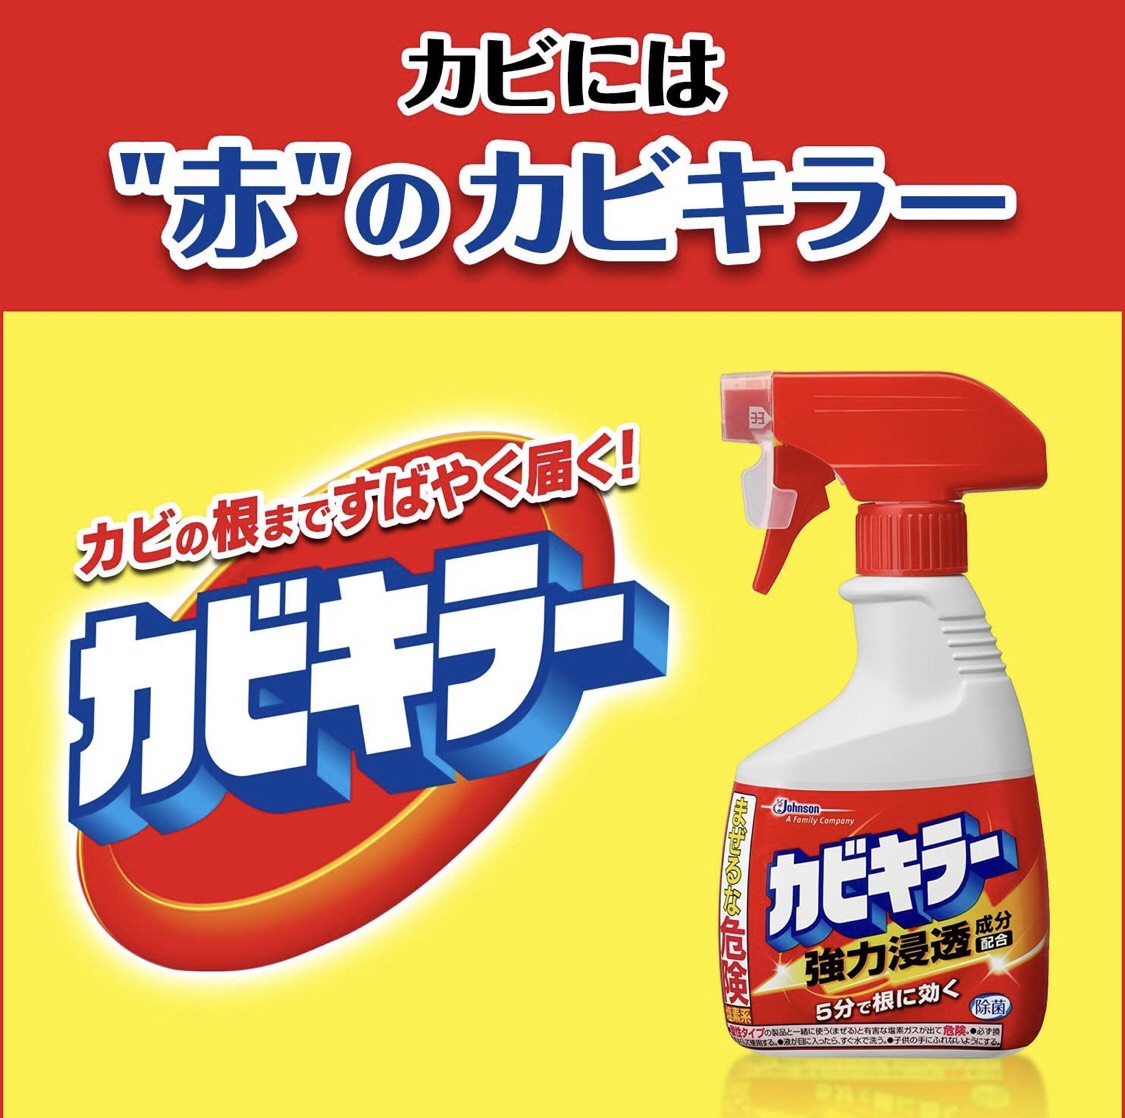 น้ำยาทำความสะอาดคราบสกปรกที่ขายดีที่สุดจากประเทศญี่ปุ่น (หายากและเข้าขั้นมหัศจรรย์)